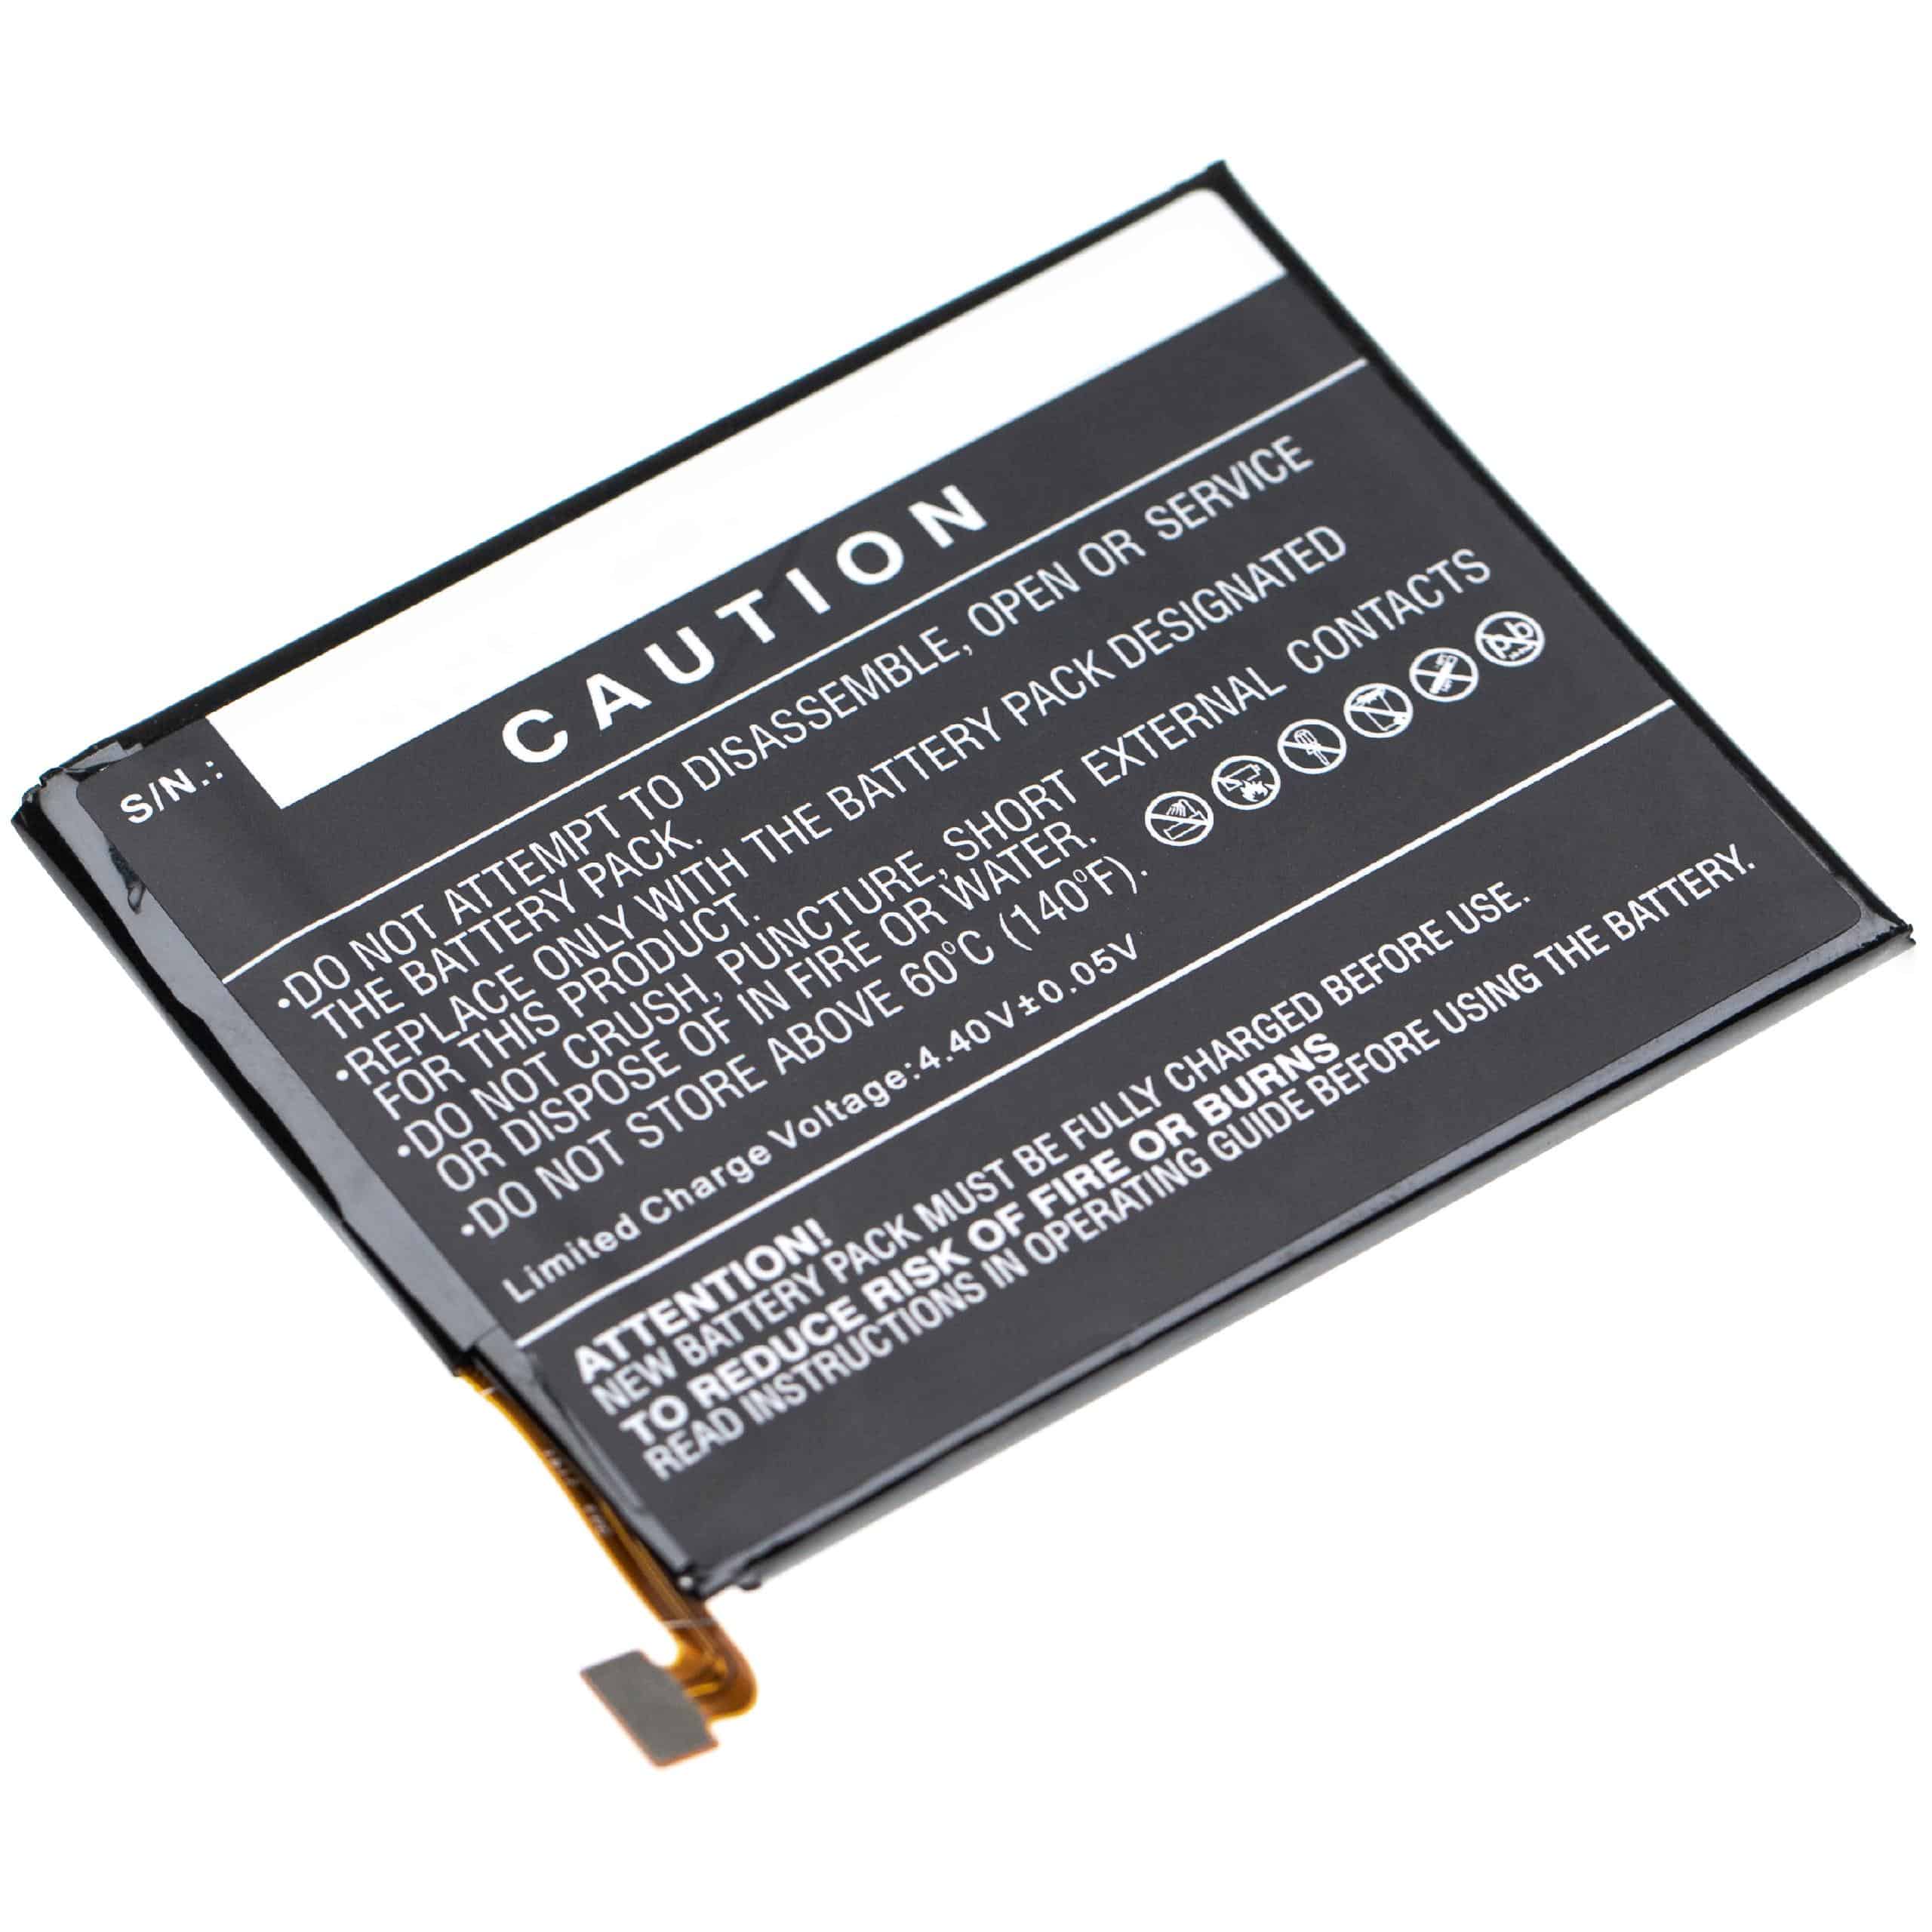 Batterie remplace Alcatel TLP024C7 pour téléphone portable - 2300mAh, 3,85V, Li-polymère